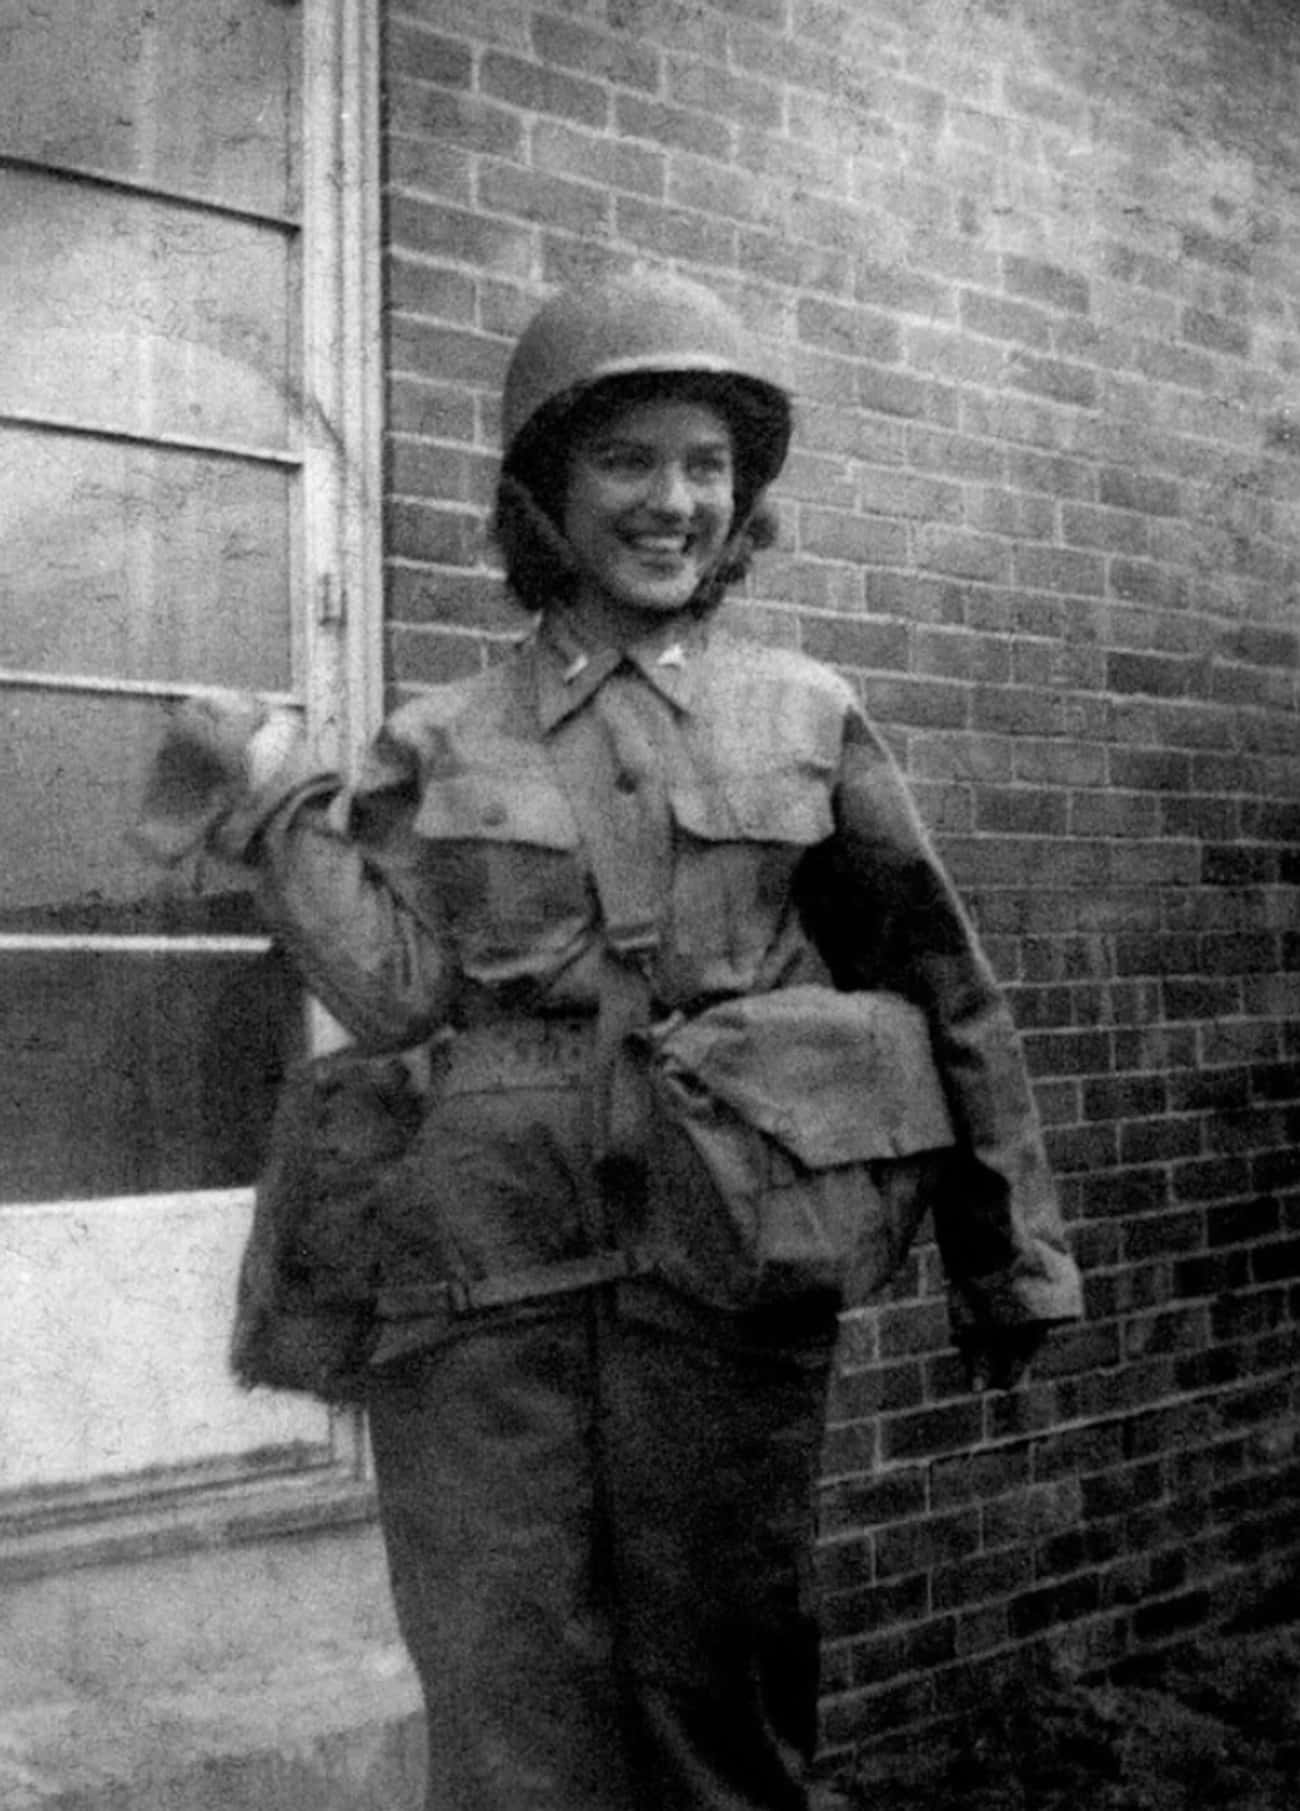 A Nurse In WWII